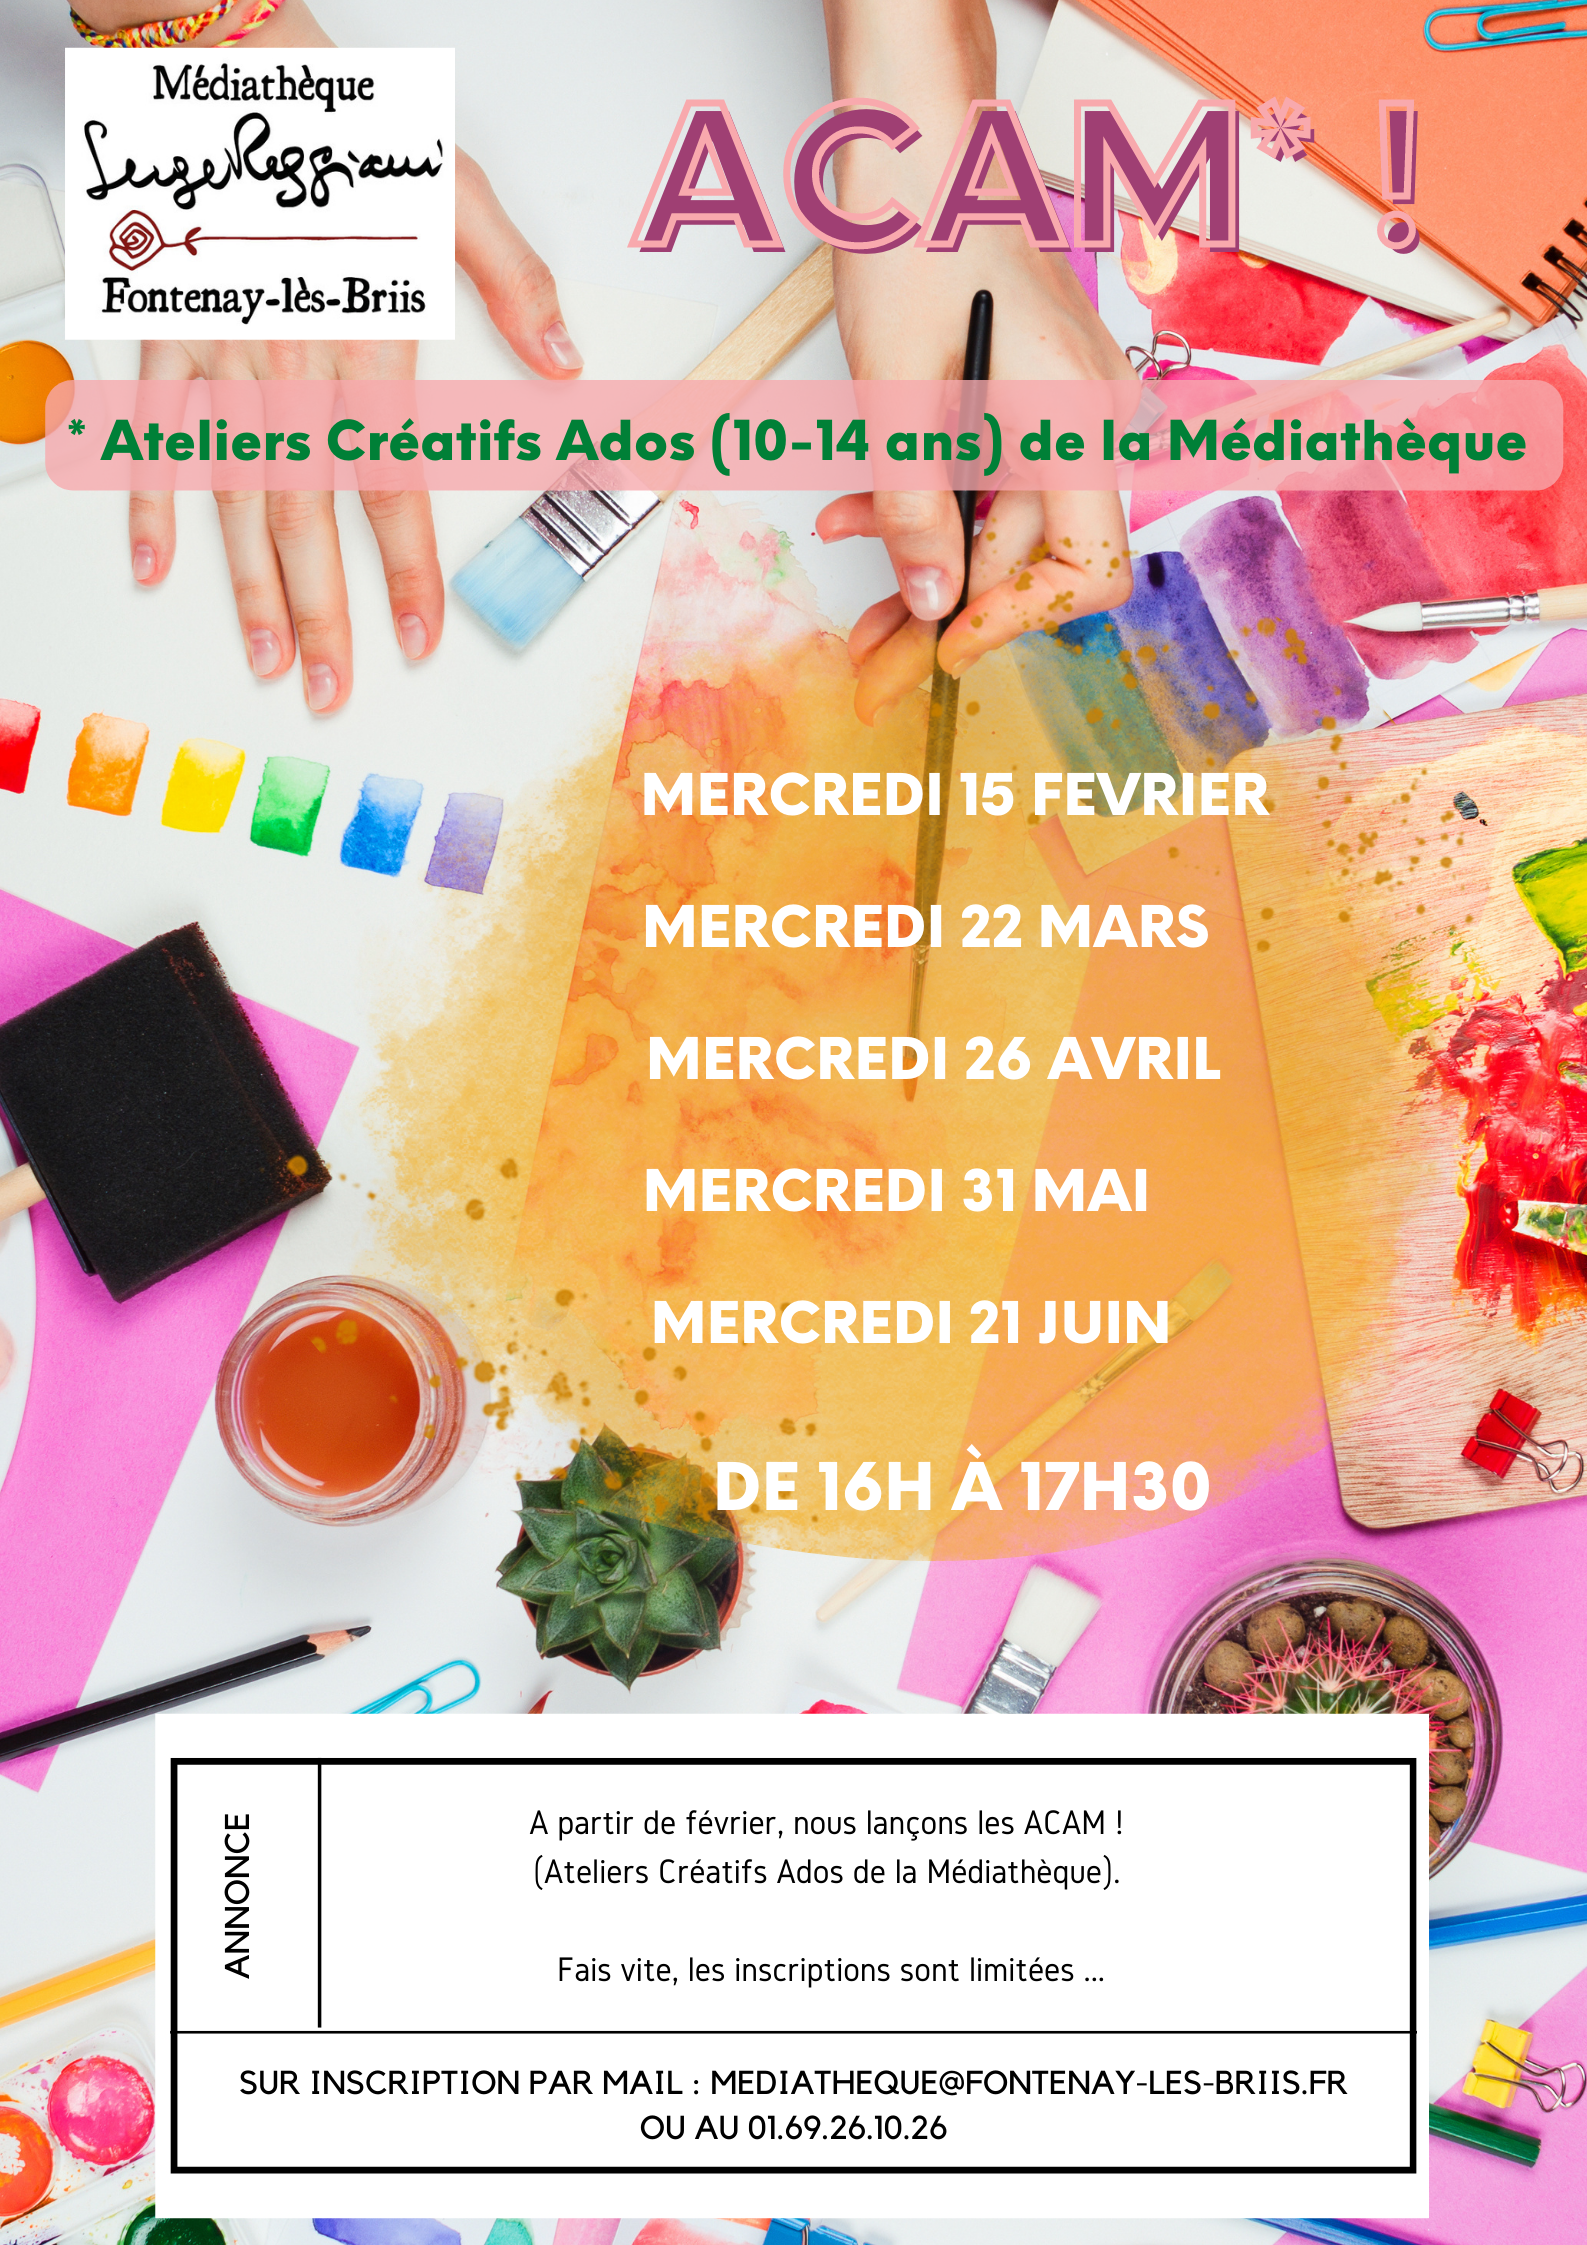 ACAM Ateliers Créatifs Ados (10-14 ans) de la Médiathèque